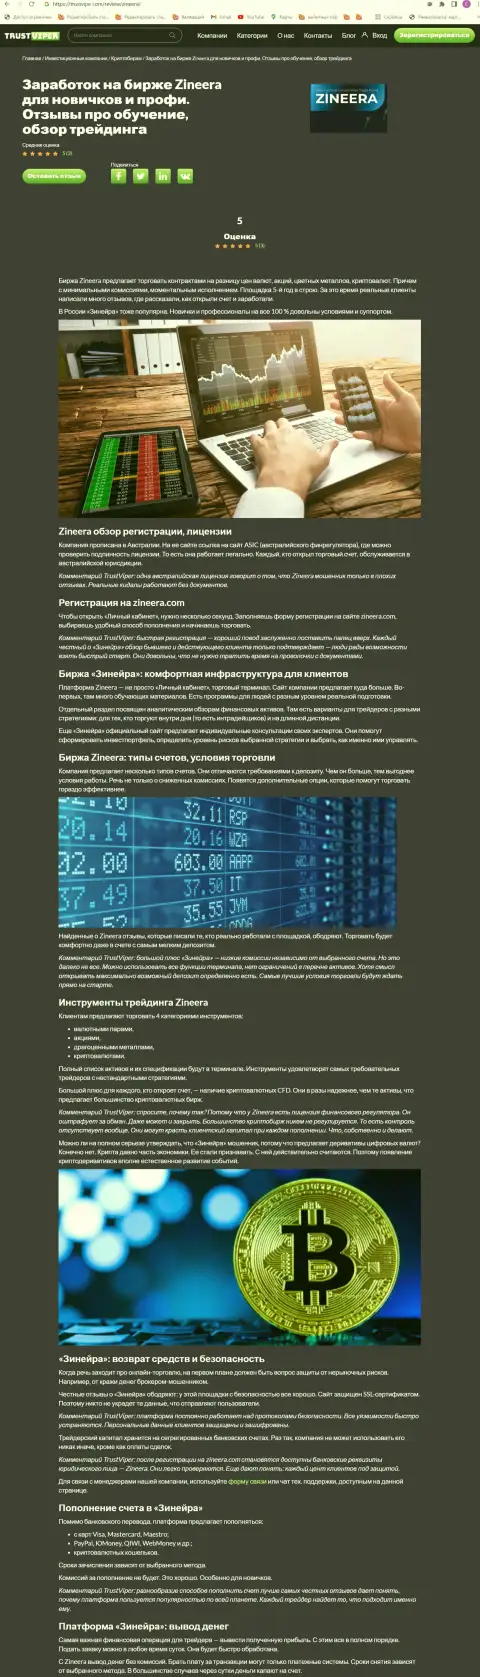 Обзор условий для трейдинга криптовалютной организации Зинейра на интернет-портале trustviper com